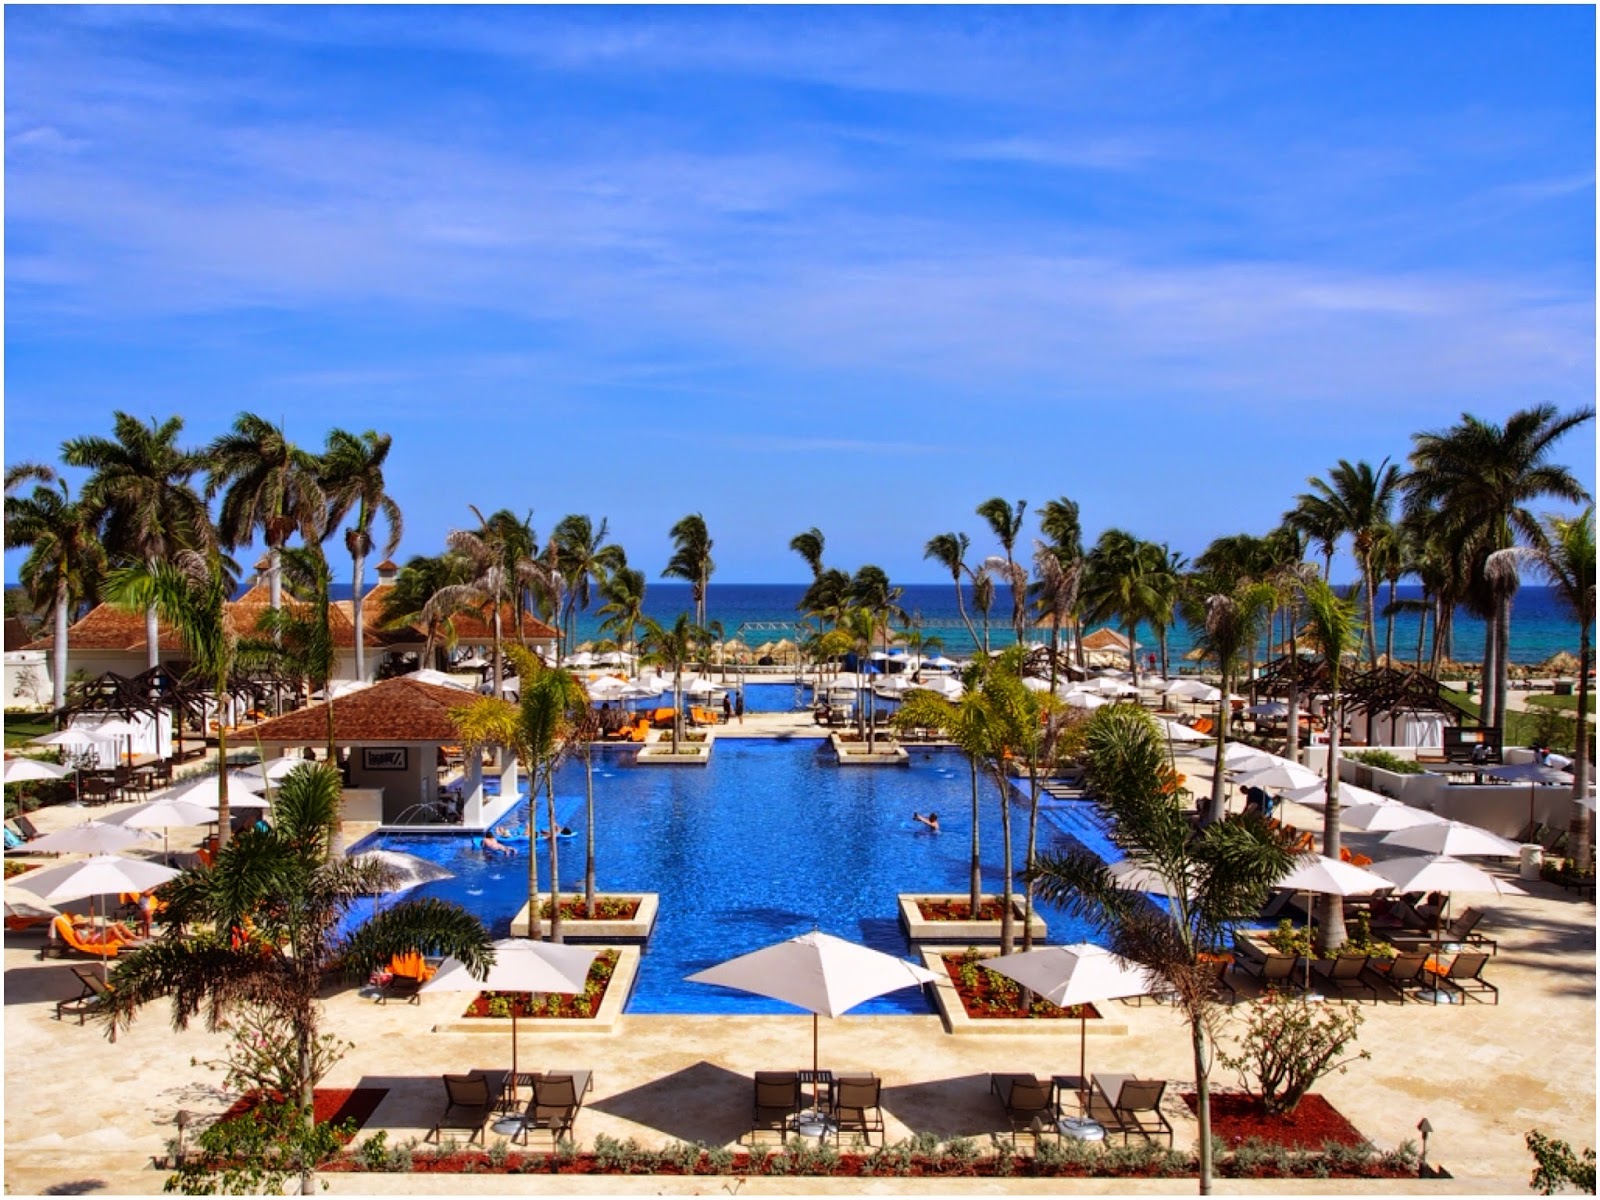 Jamaica Welcomes Hyatt Ziva & Zilara Rose Hall Resorts - Travelista731600 x 1200